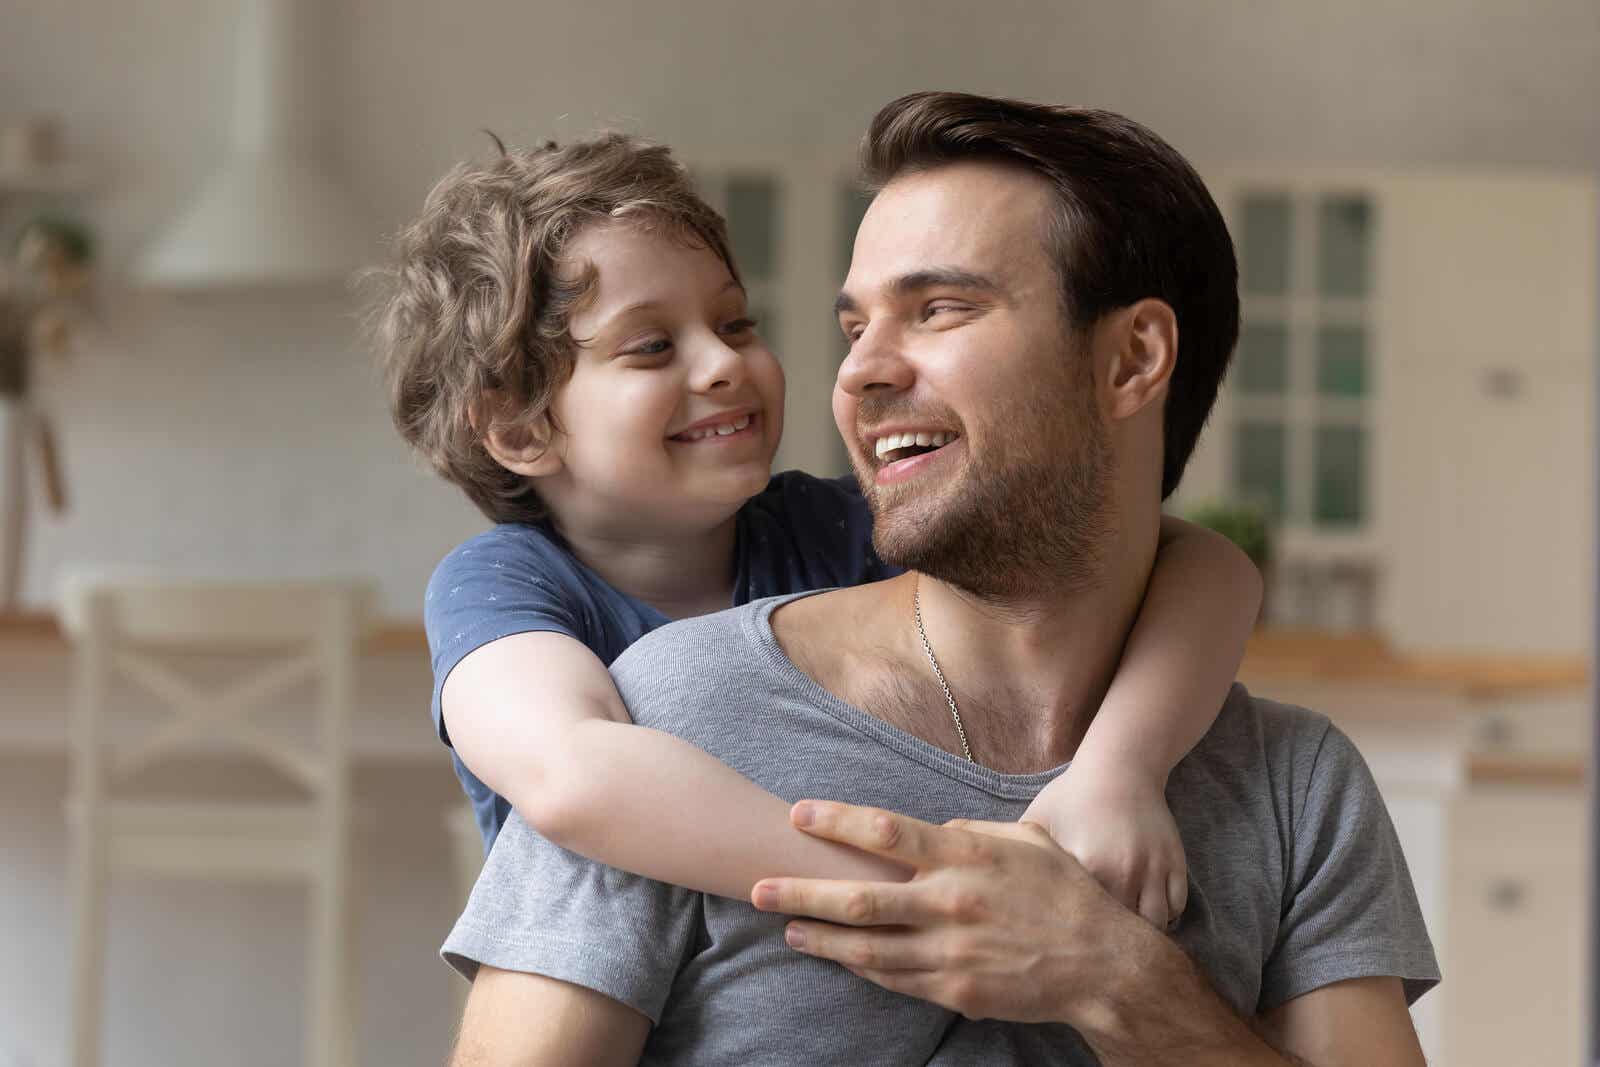 Een kind met zijn armen om de schouders van zijn vader terwijl ze naar elkaar glimlachen.